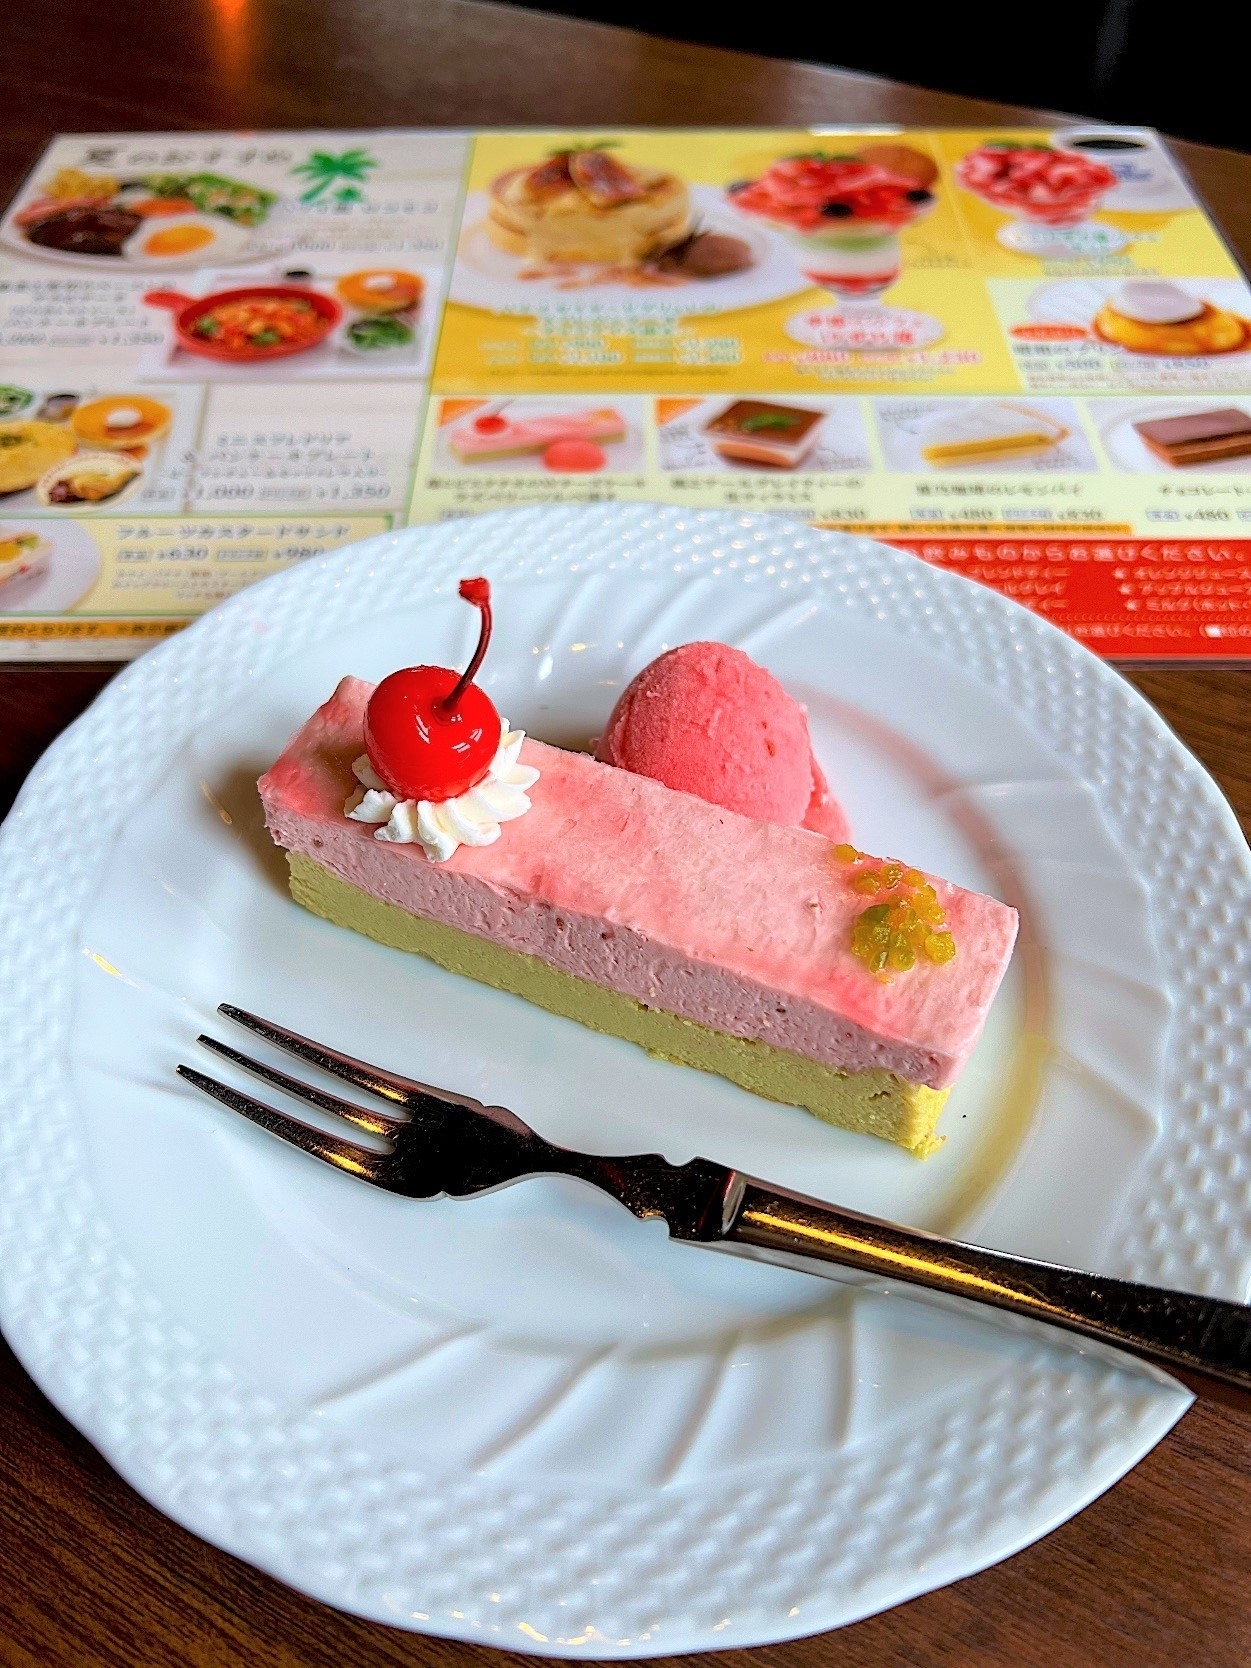 星乃珈琲店のおすすめスイーツメニュー「苺とピスタチオのWチーズケーキ/ラズベリーソルベ添え」